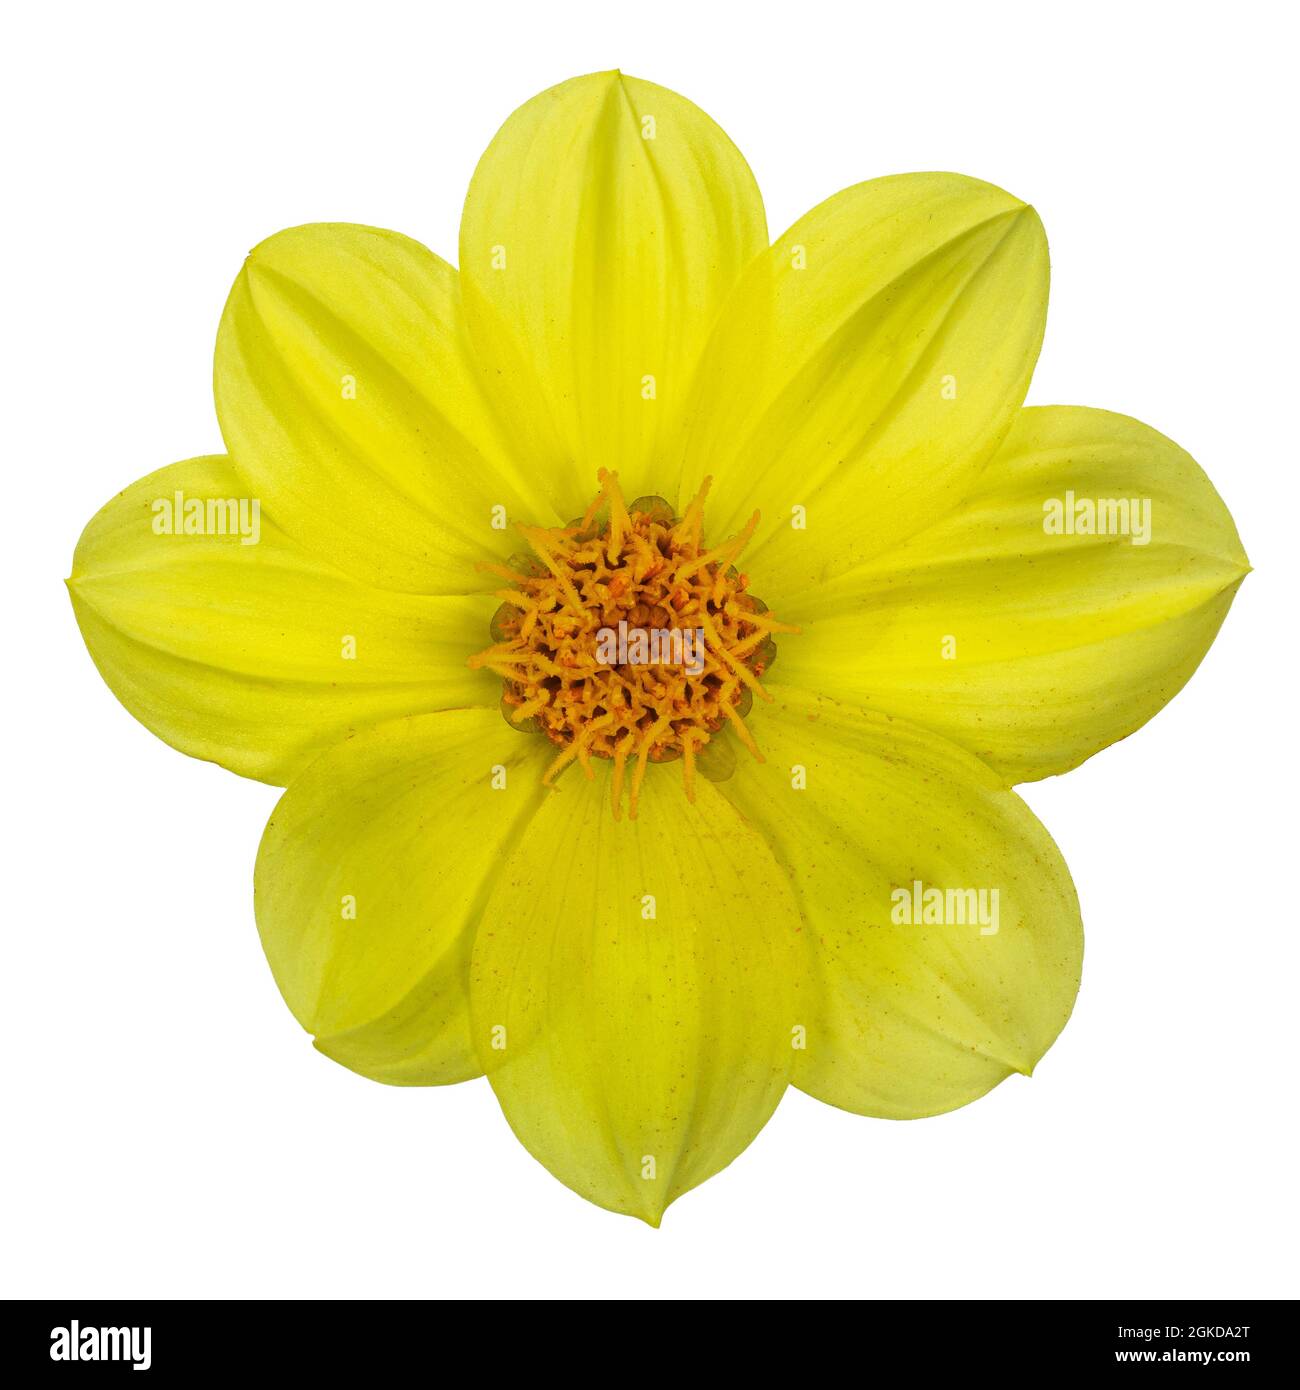 Vue de dessus d'une seule tête de fleur jaune Dahlia. Isolé sur un fond blanc. Banque D'Images